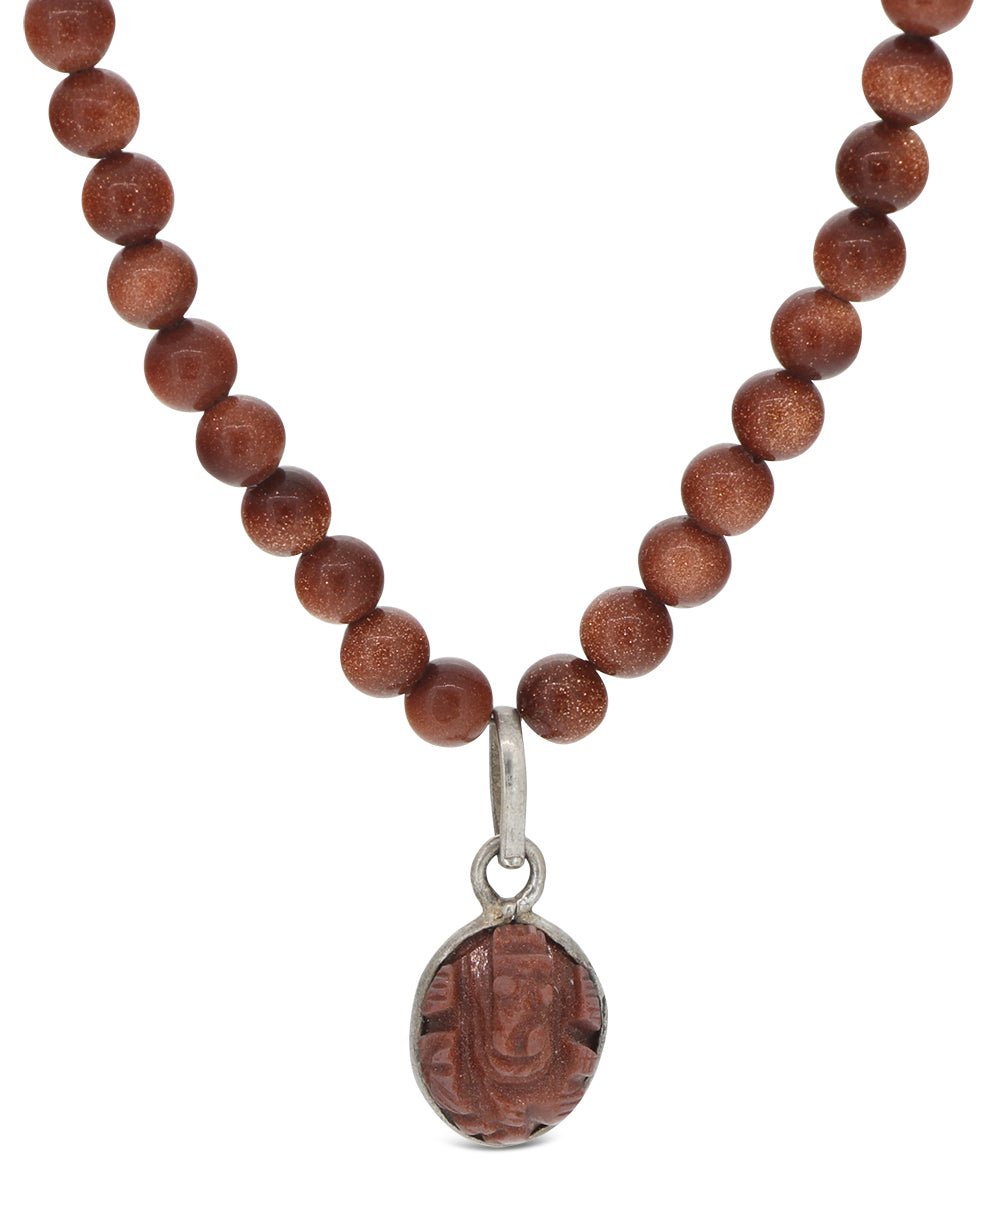 Goldstone Ganesha Pendant Necklace - Necklaces